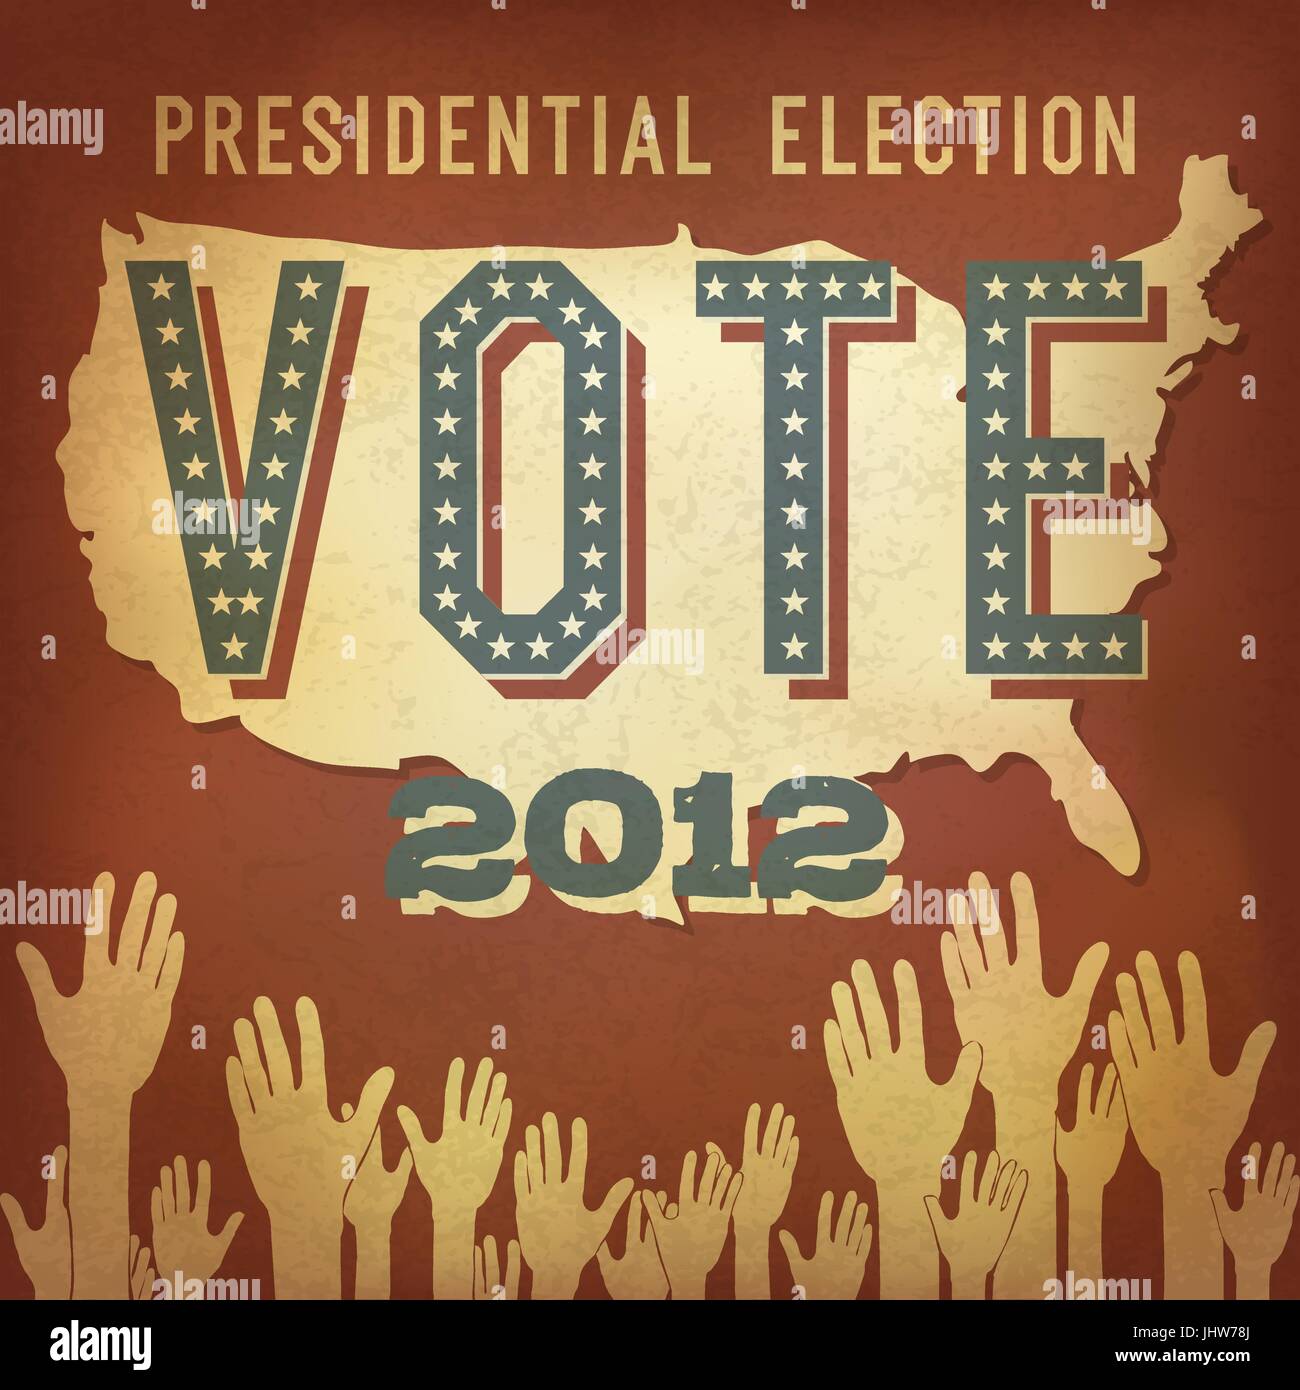 Presidential election 2012. Retro poster design, vector, EPS 10. Stock Vector